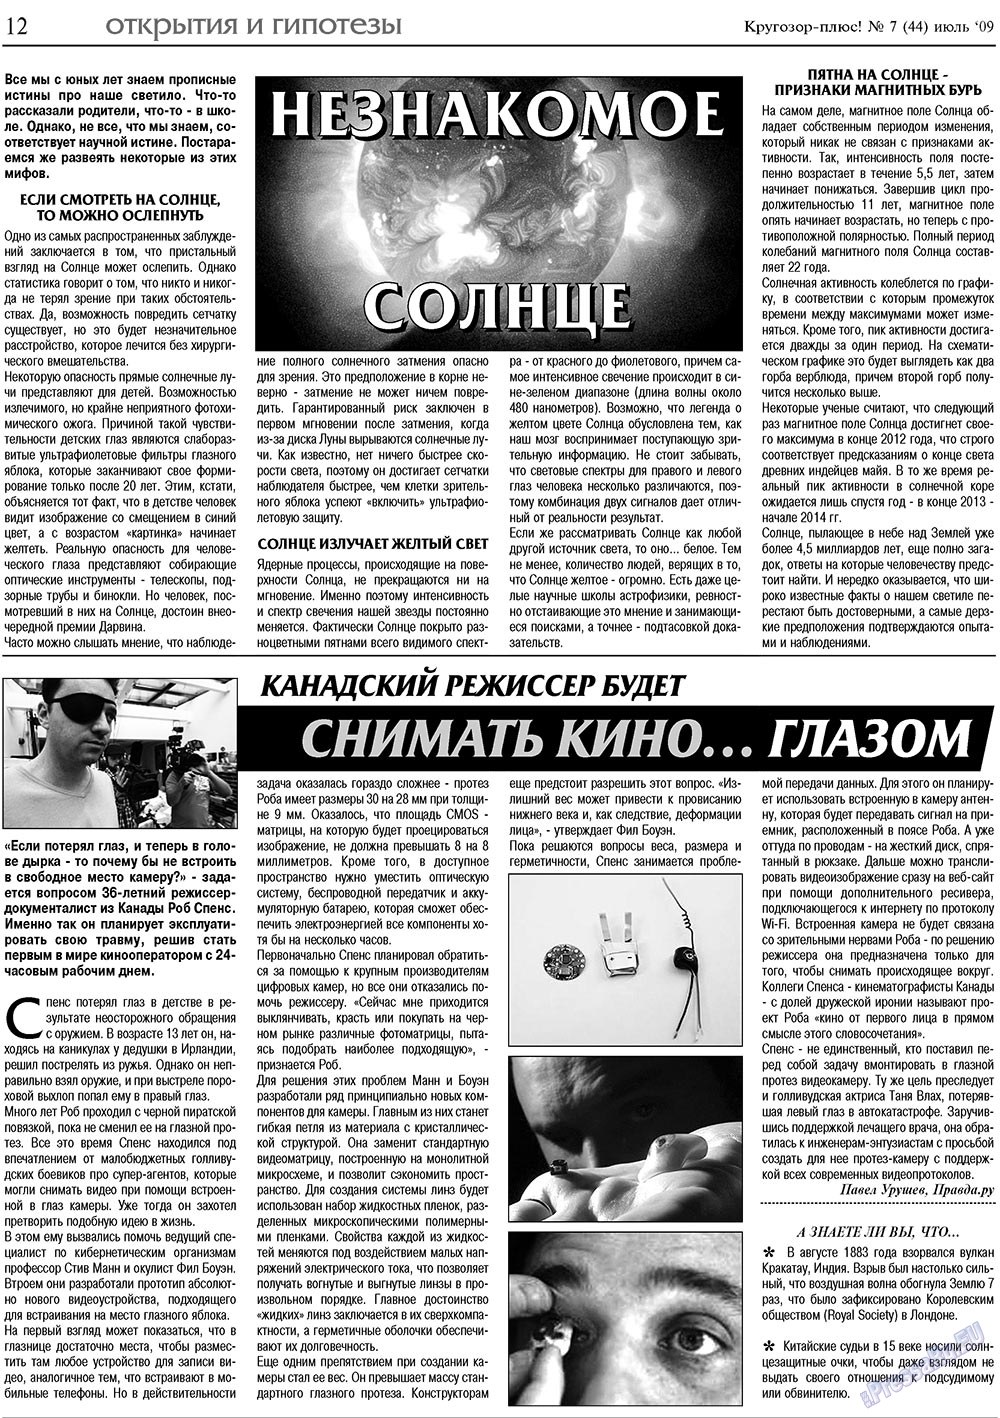 Кругозор плюс!, газета. 2009 №7 стр.12